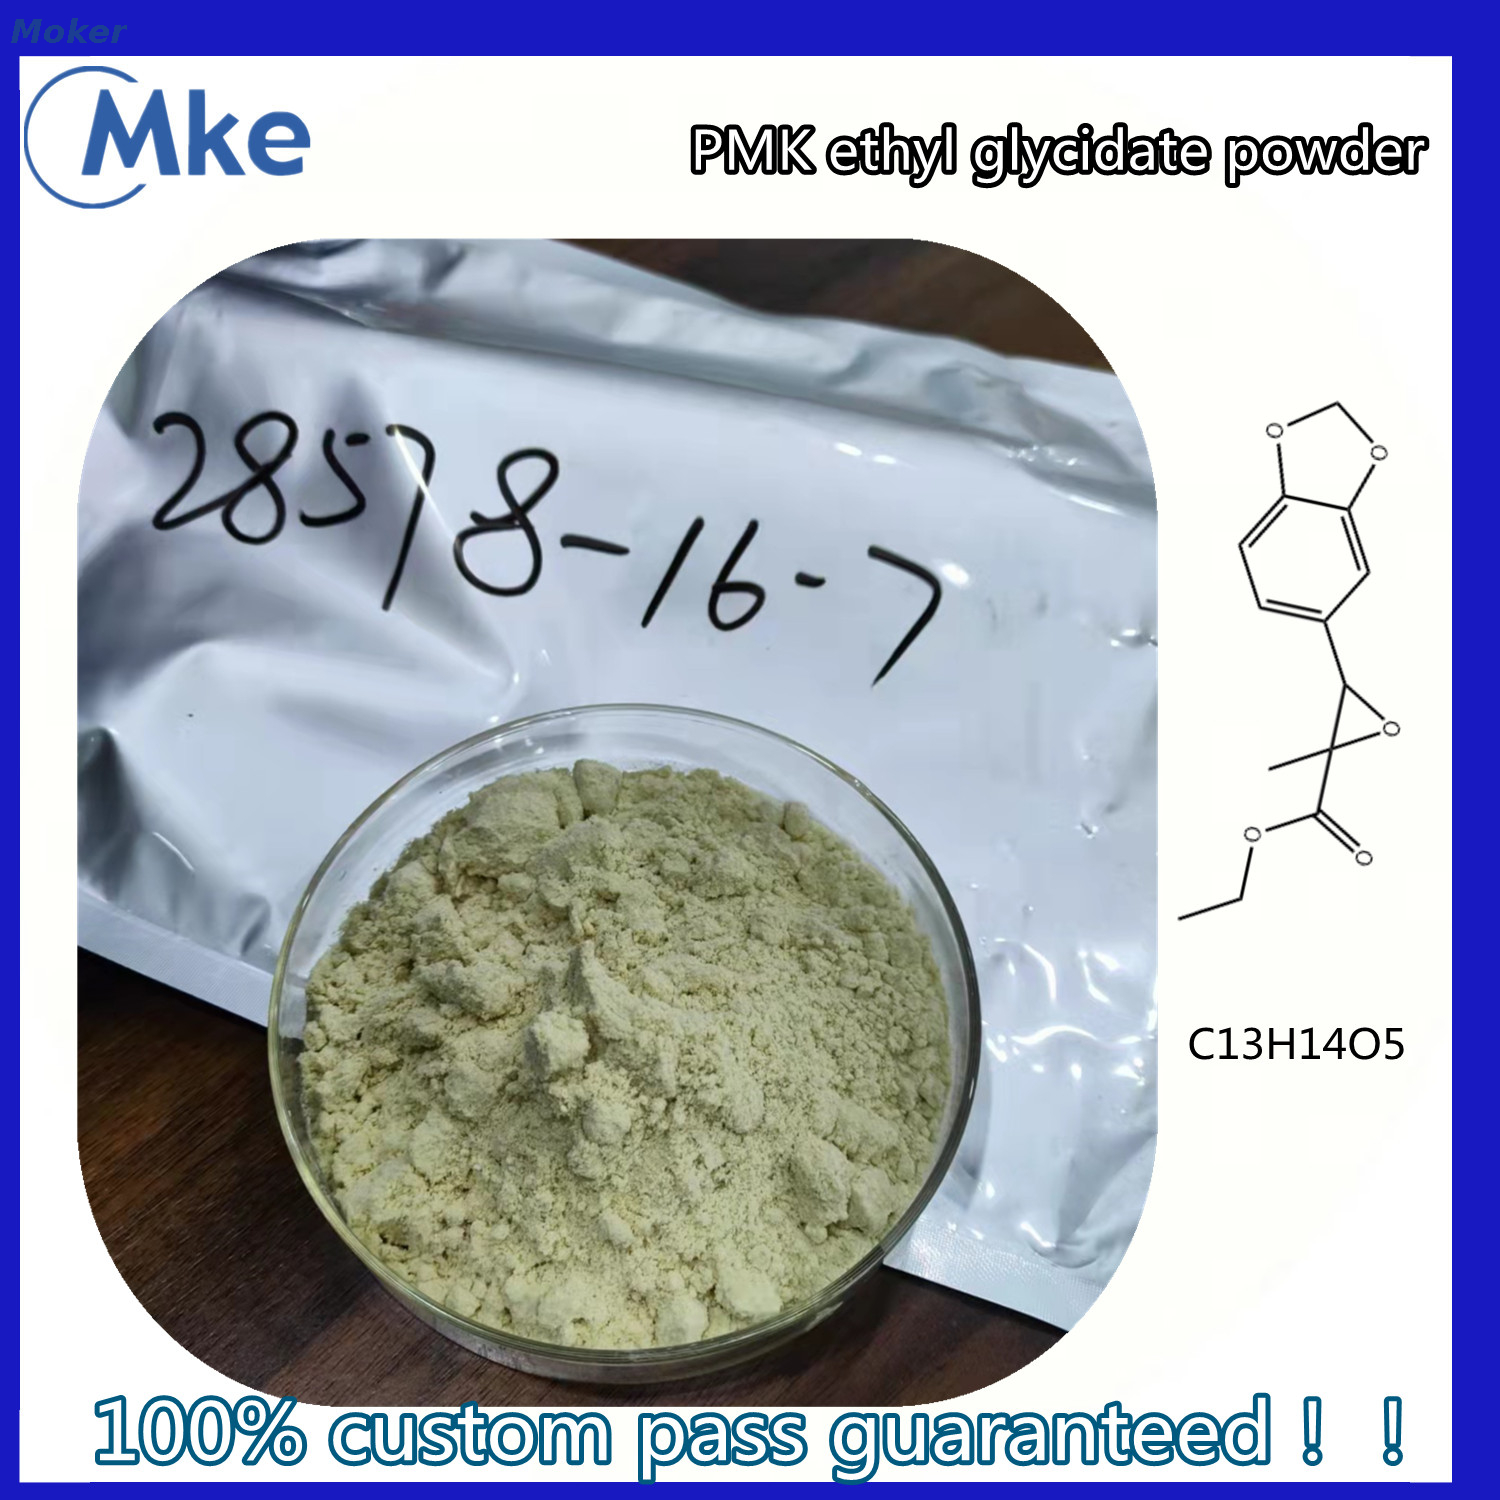 High purity New Pmk Ethyl Glycidate Powder Cas 28578-16-7 pmk oil 